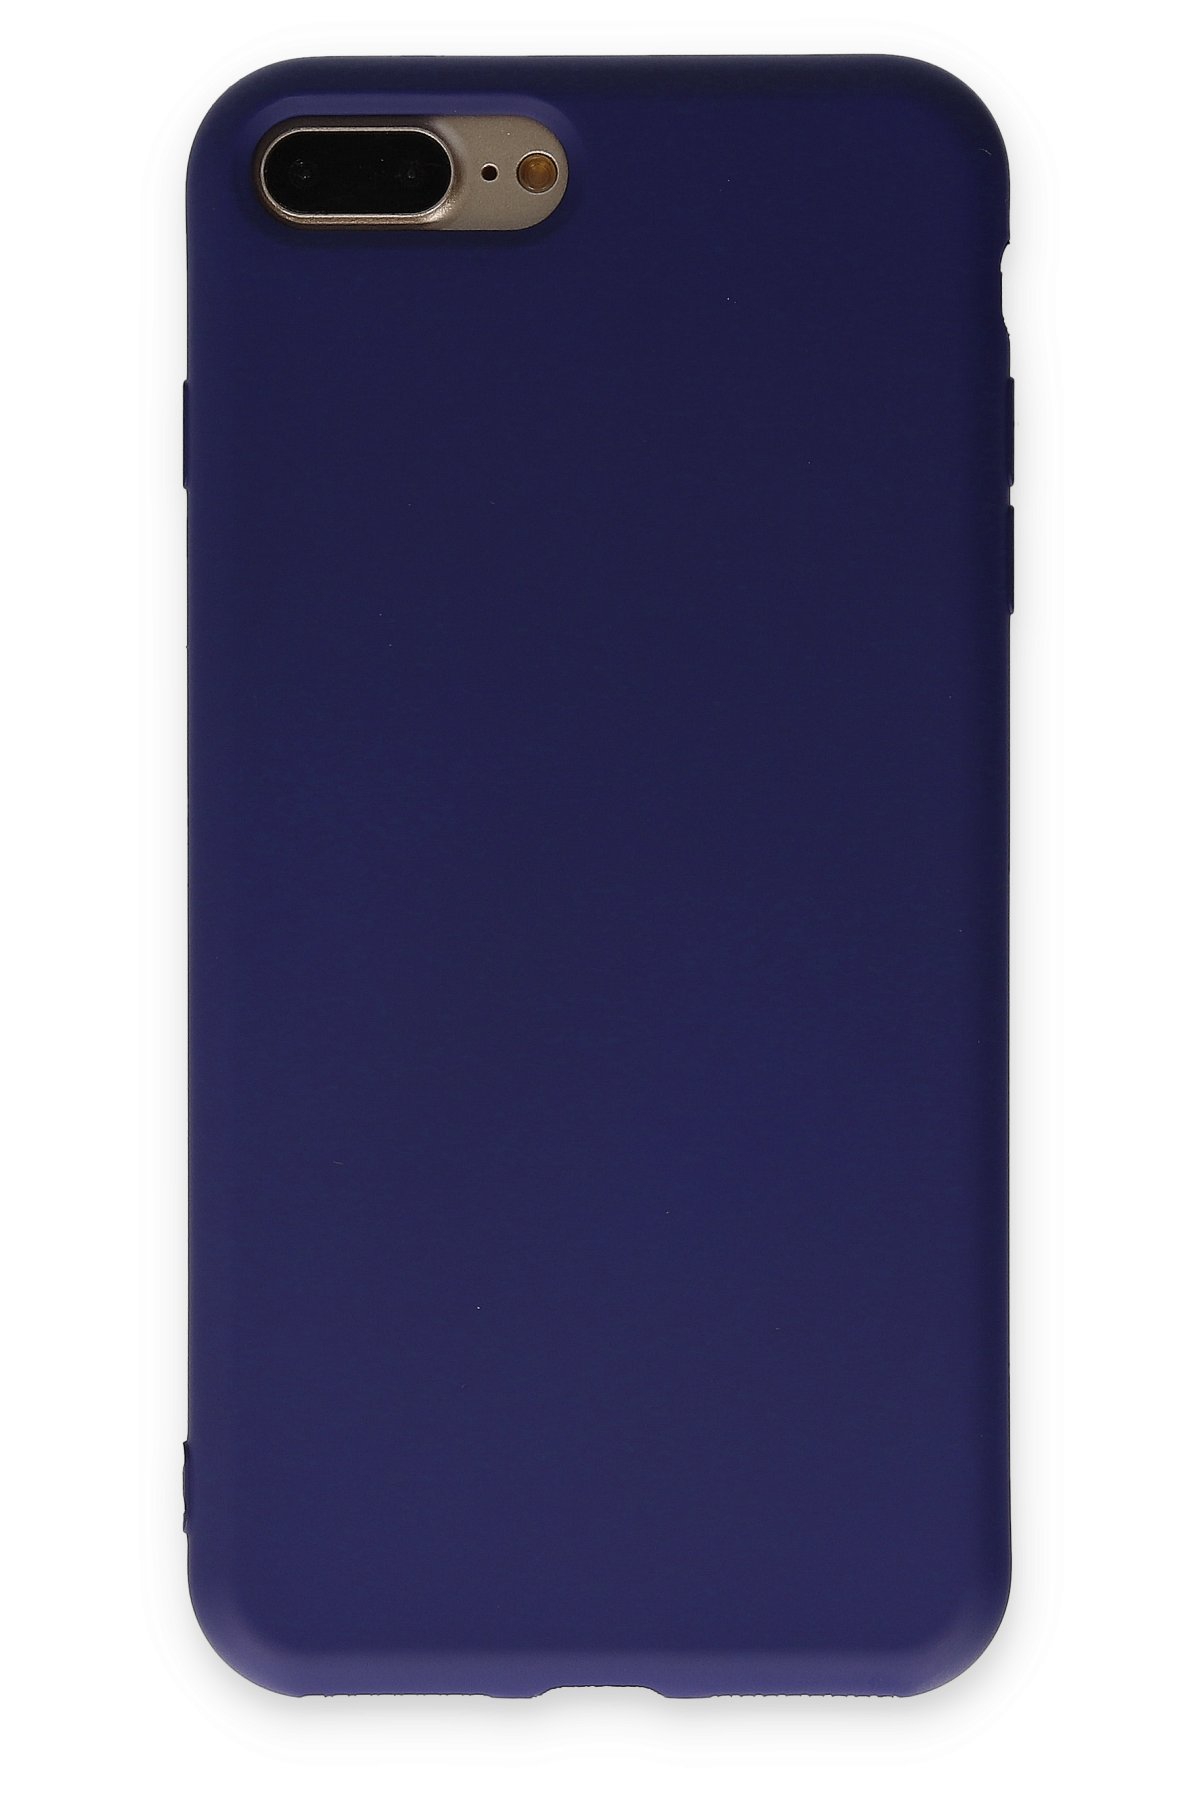 Newface iPhone 8 Plus Kılıf Platin Silikon - Mavi